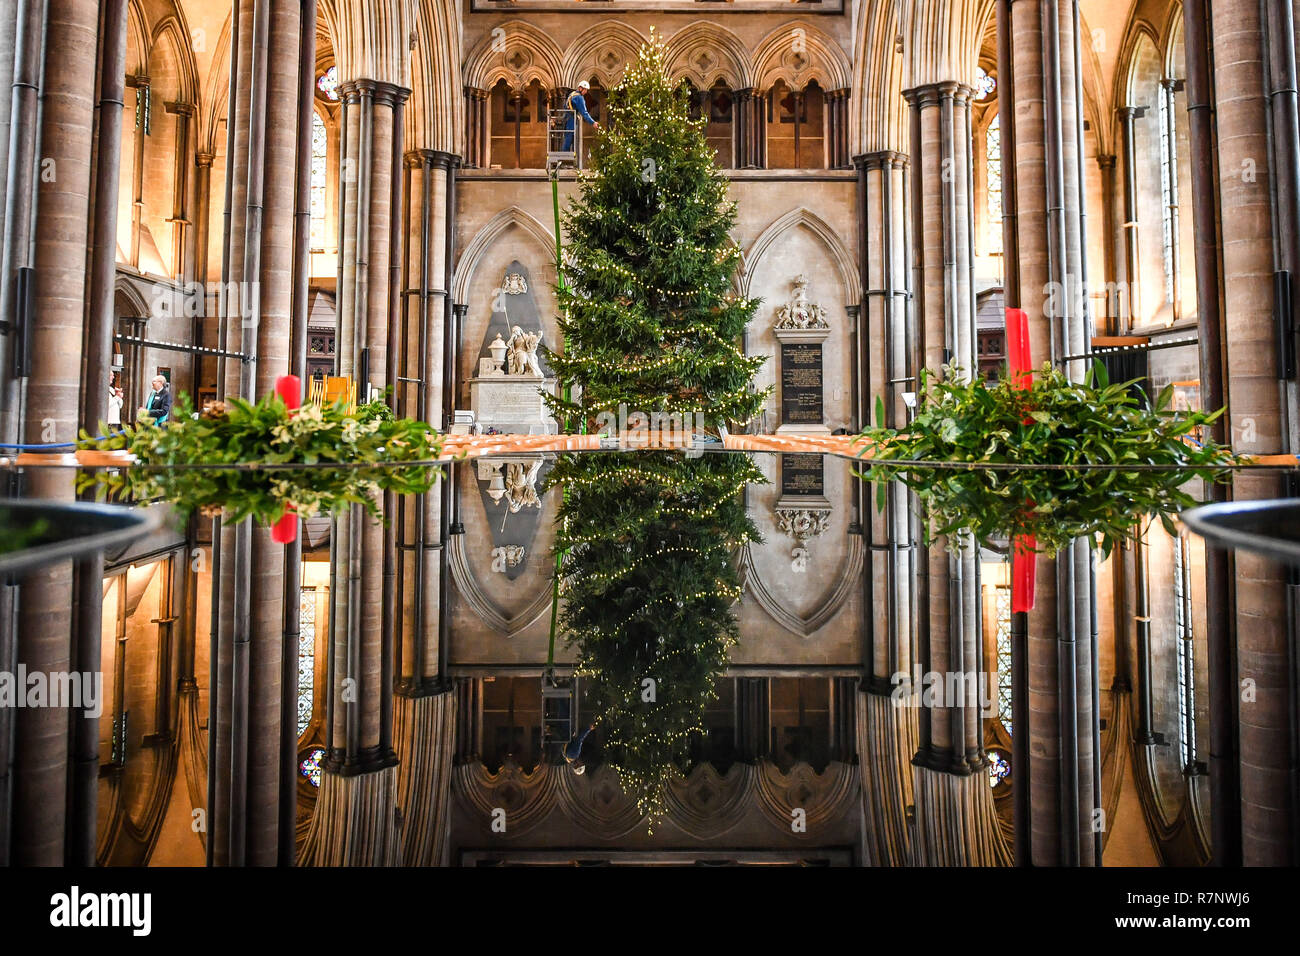 La Cattedrale di Salisbury ecclesiastiche di falegname, Richard Pike decora il 34ft Abete rosso albero di Natale, abbattuto a Longleat Estate, come il finale di rifili, compresi 1000 luci LED, baubles di vetro e gocce di ghiaccio, sono disposte sull'albero, che sta di fronte alla finestra Occidentale. Foto Stock